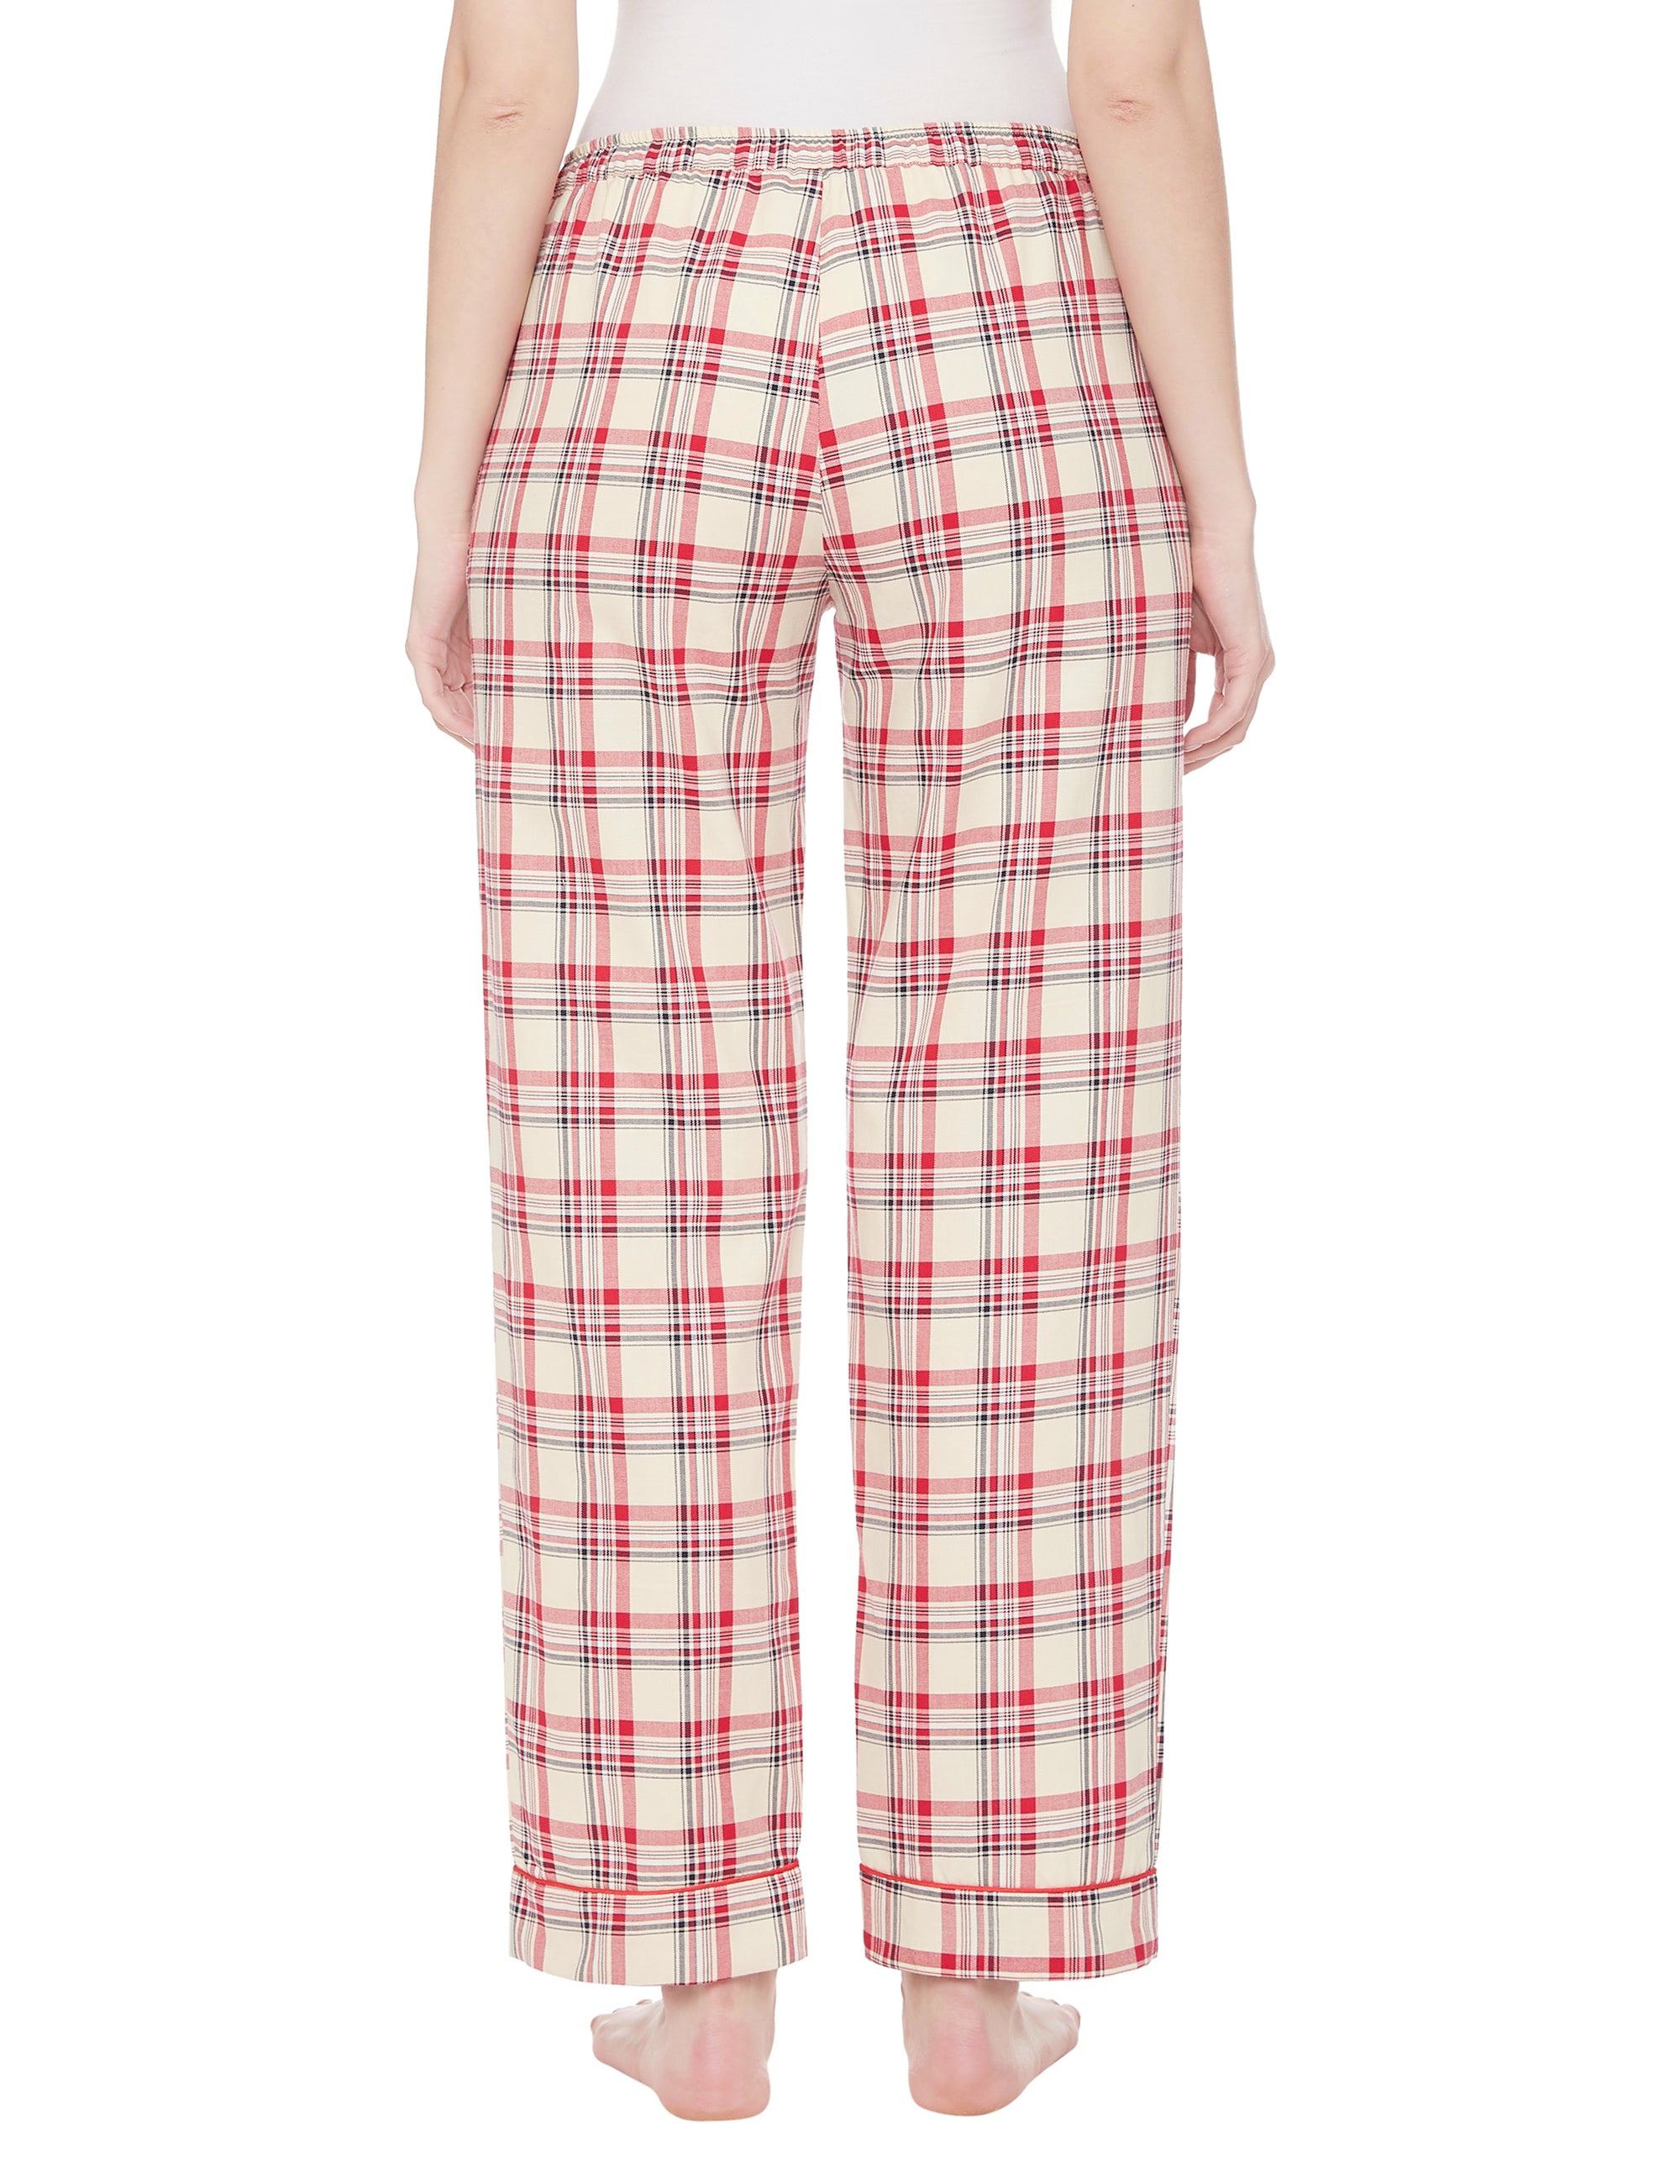 Laura Cotton lightweight Sleep Pyjamas  5.00 Indigo Paisley